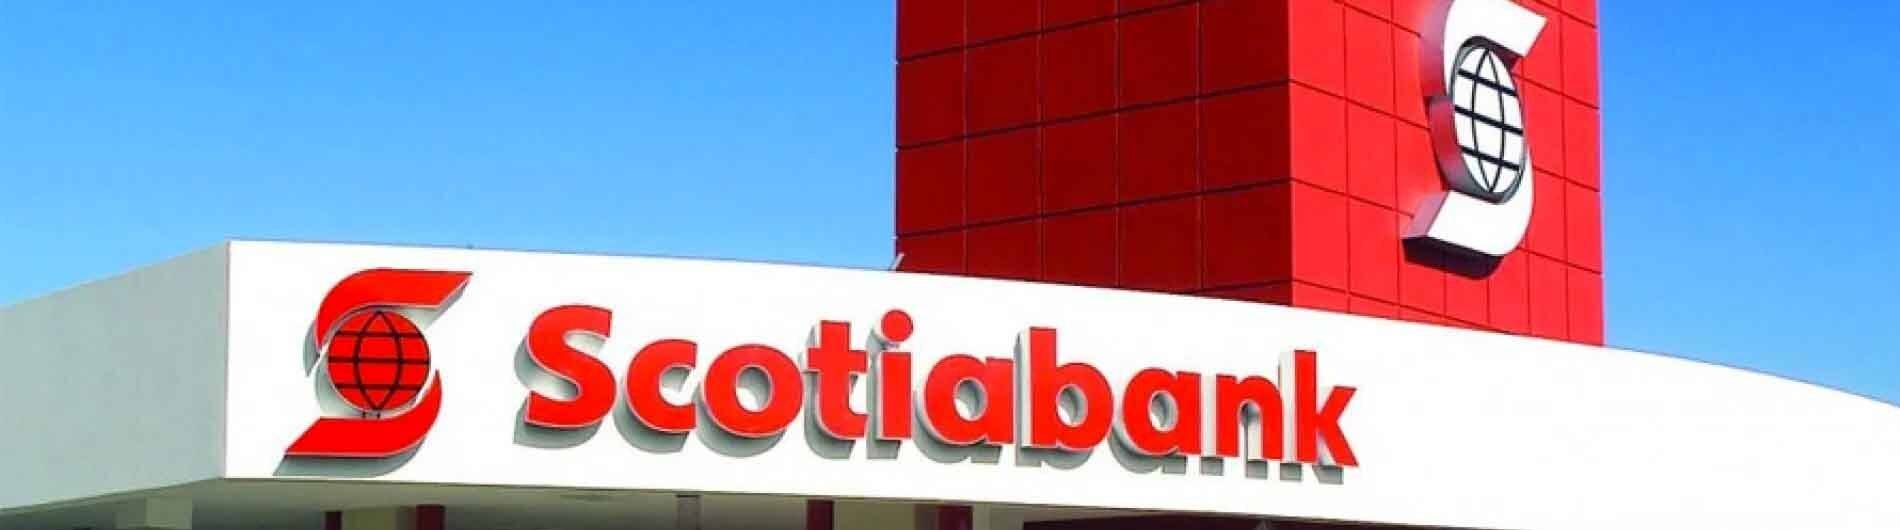 Scotiabank impulsa la sostenibilidad en telecomunicaciones con innovadora cuenta vinculada a indicadores de sostenibilidad